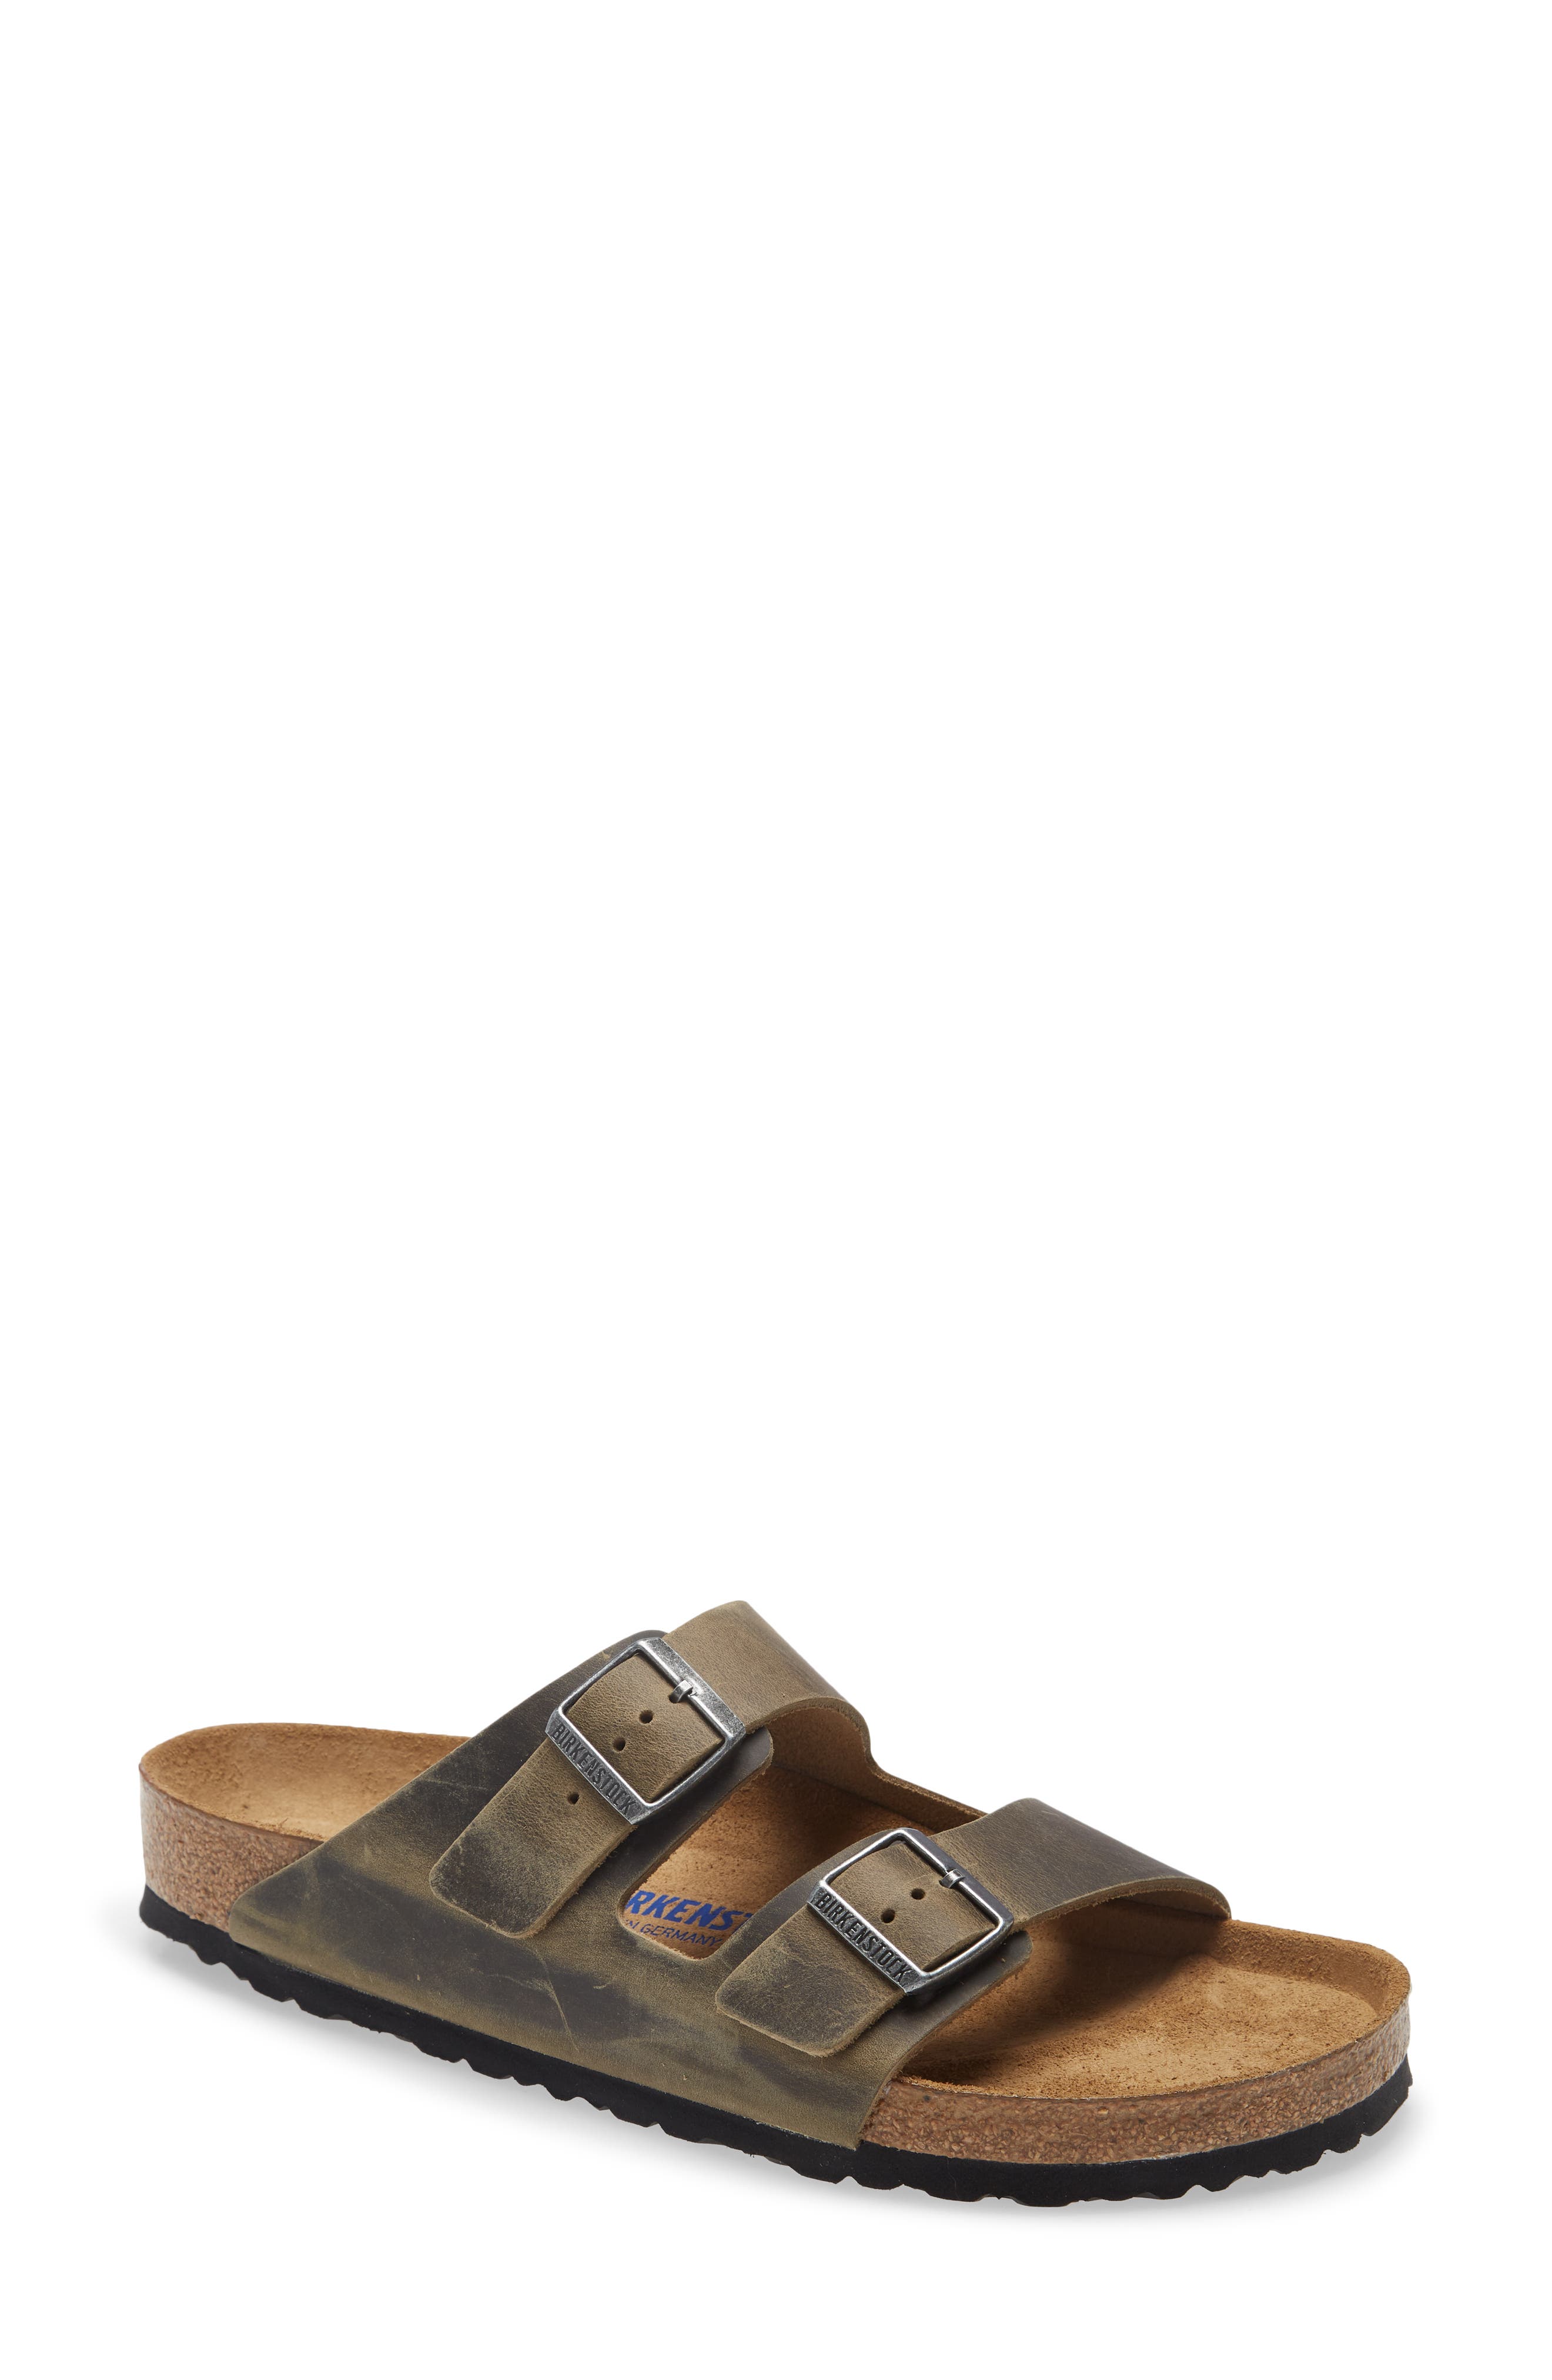 Birkenstock Arizona Soft Slide Sandal in Faded Khaki at Nordstrom, Size 13-13.5Us